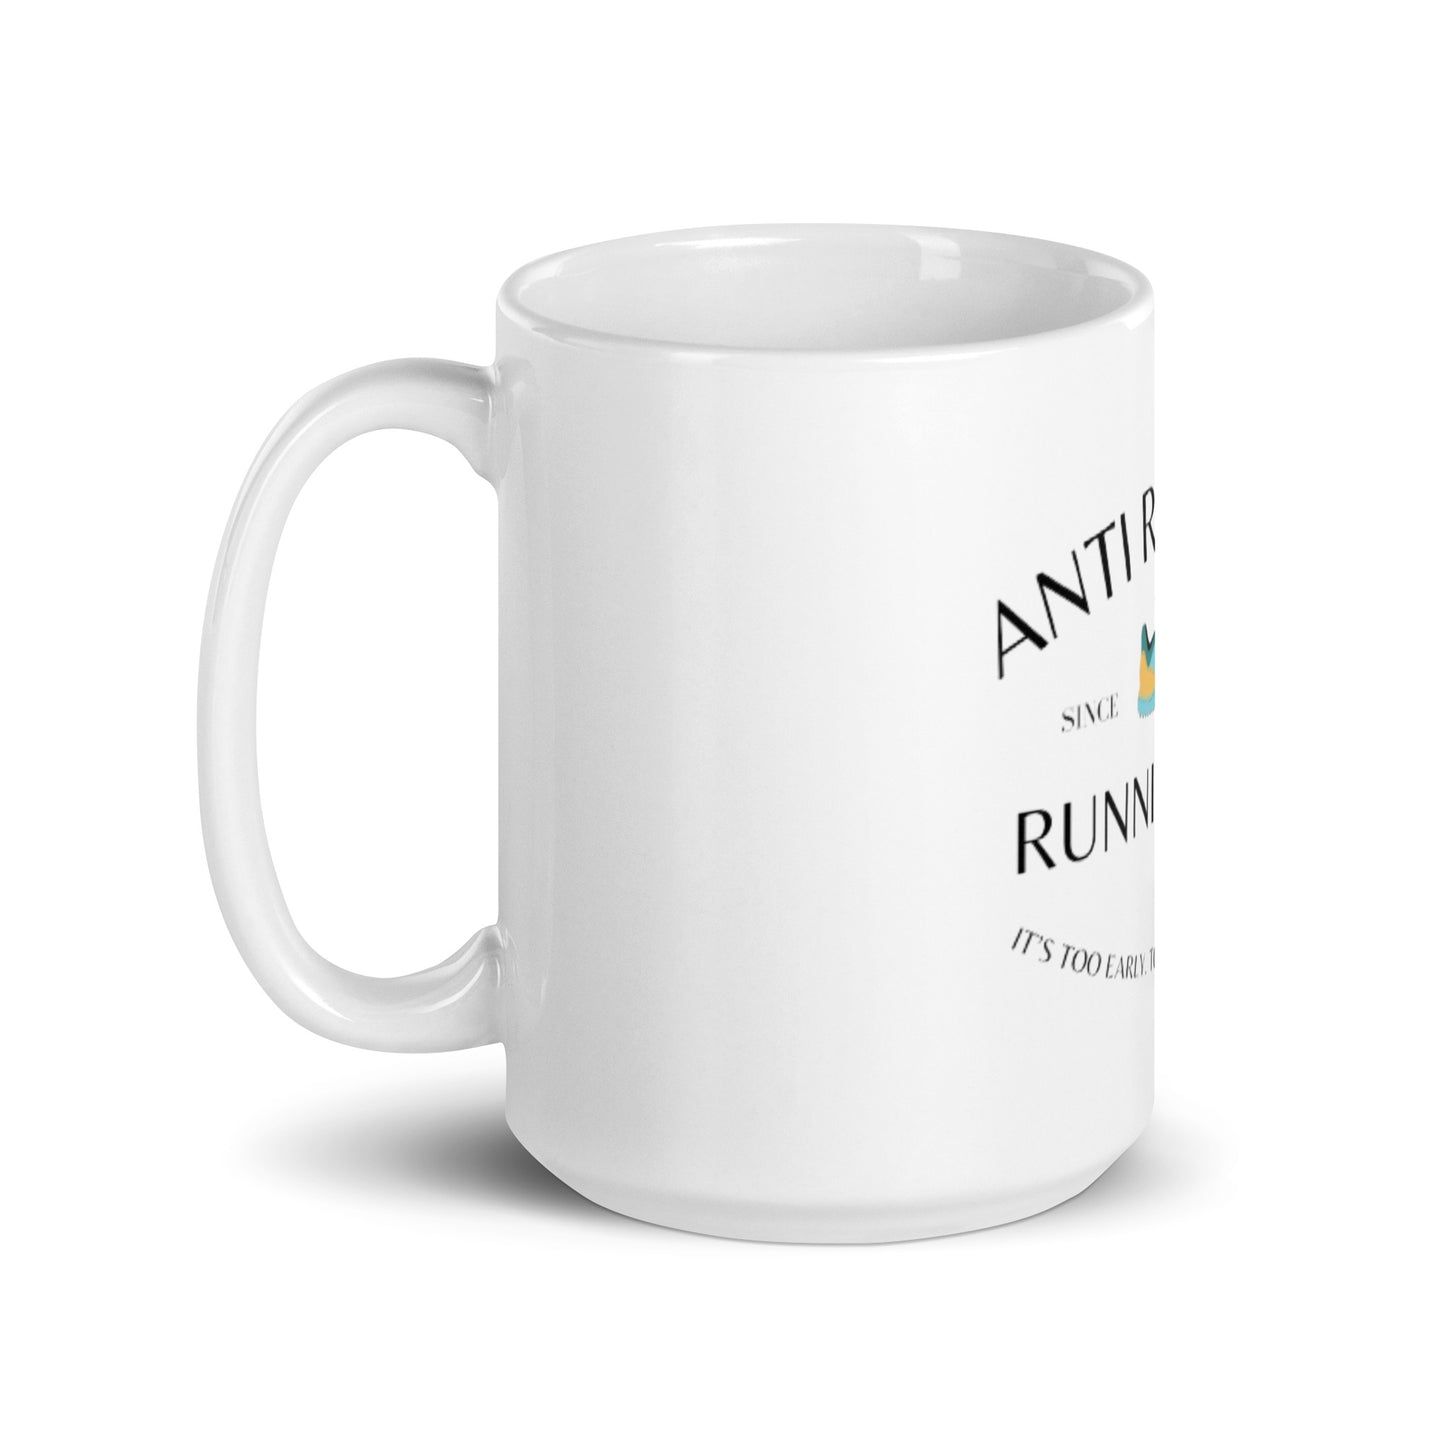 Anti Running Club Mug